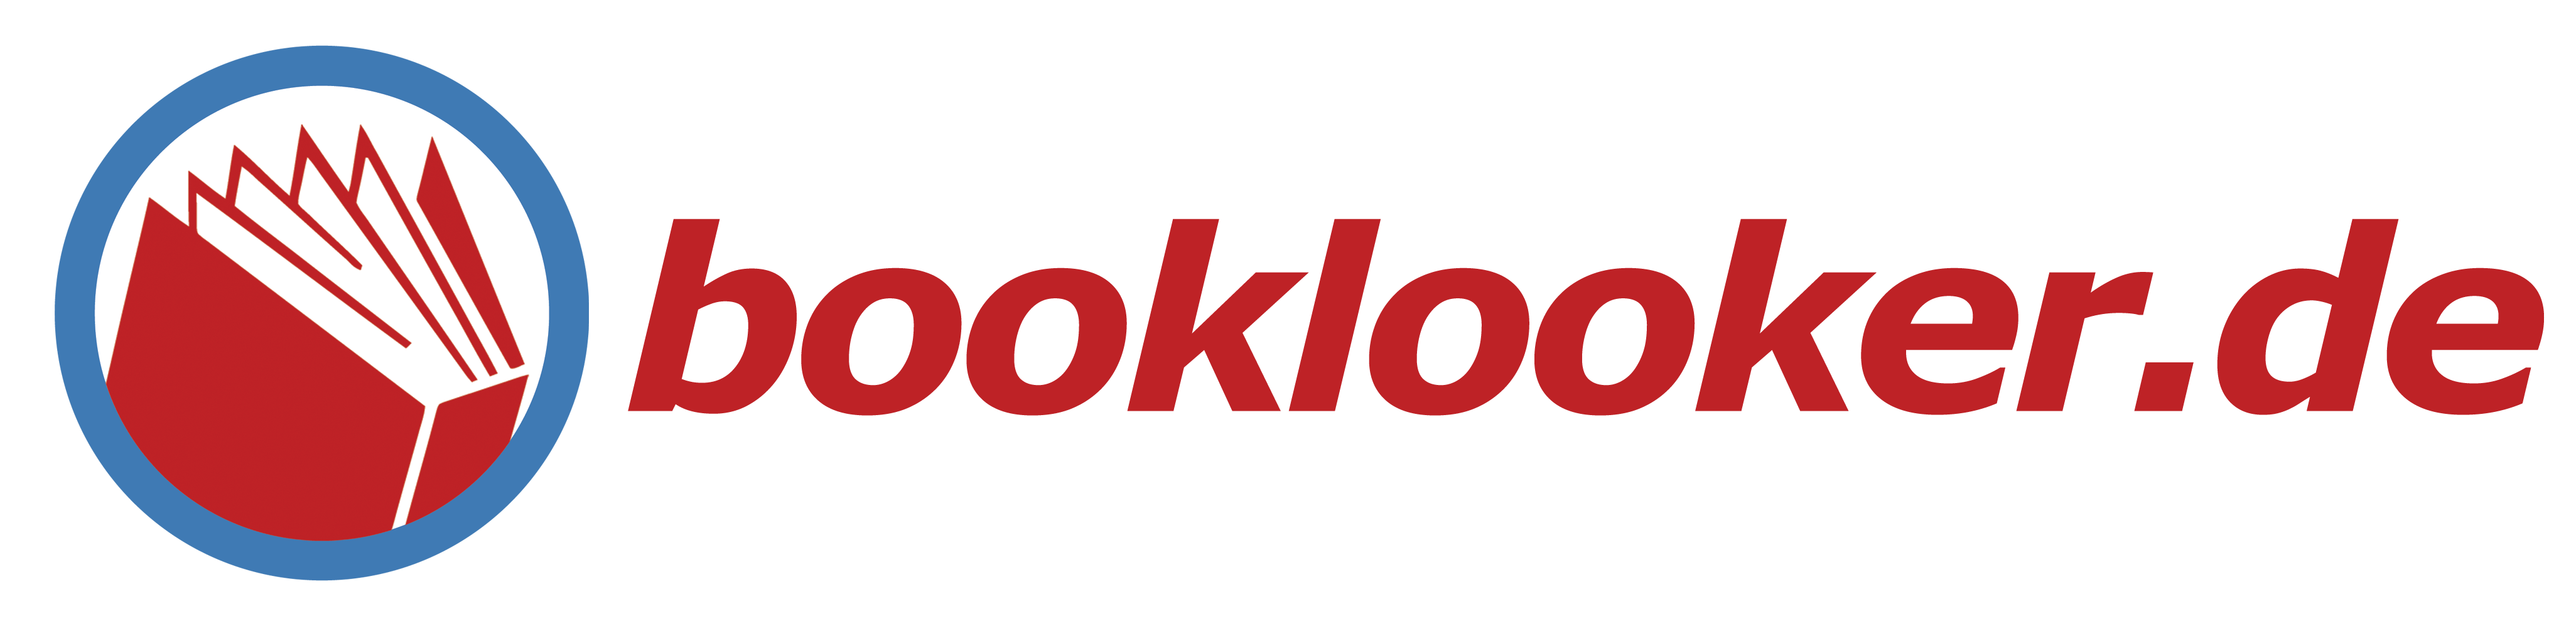 booklooker-logo